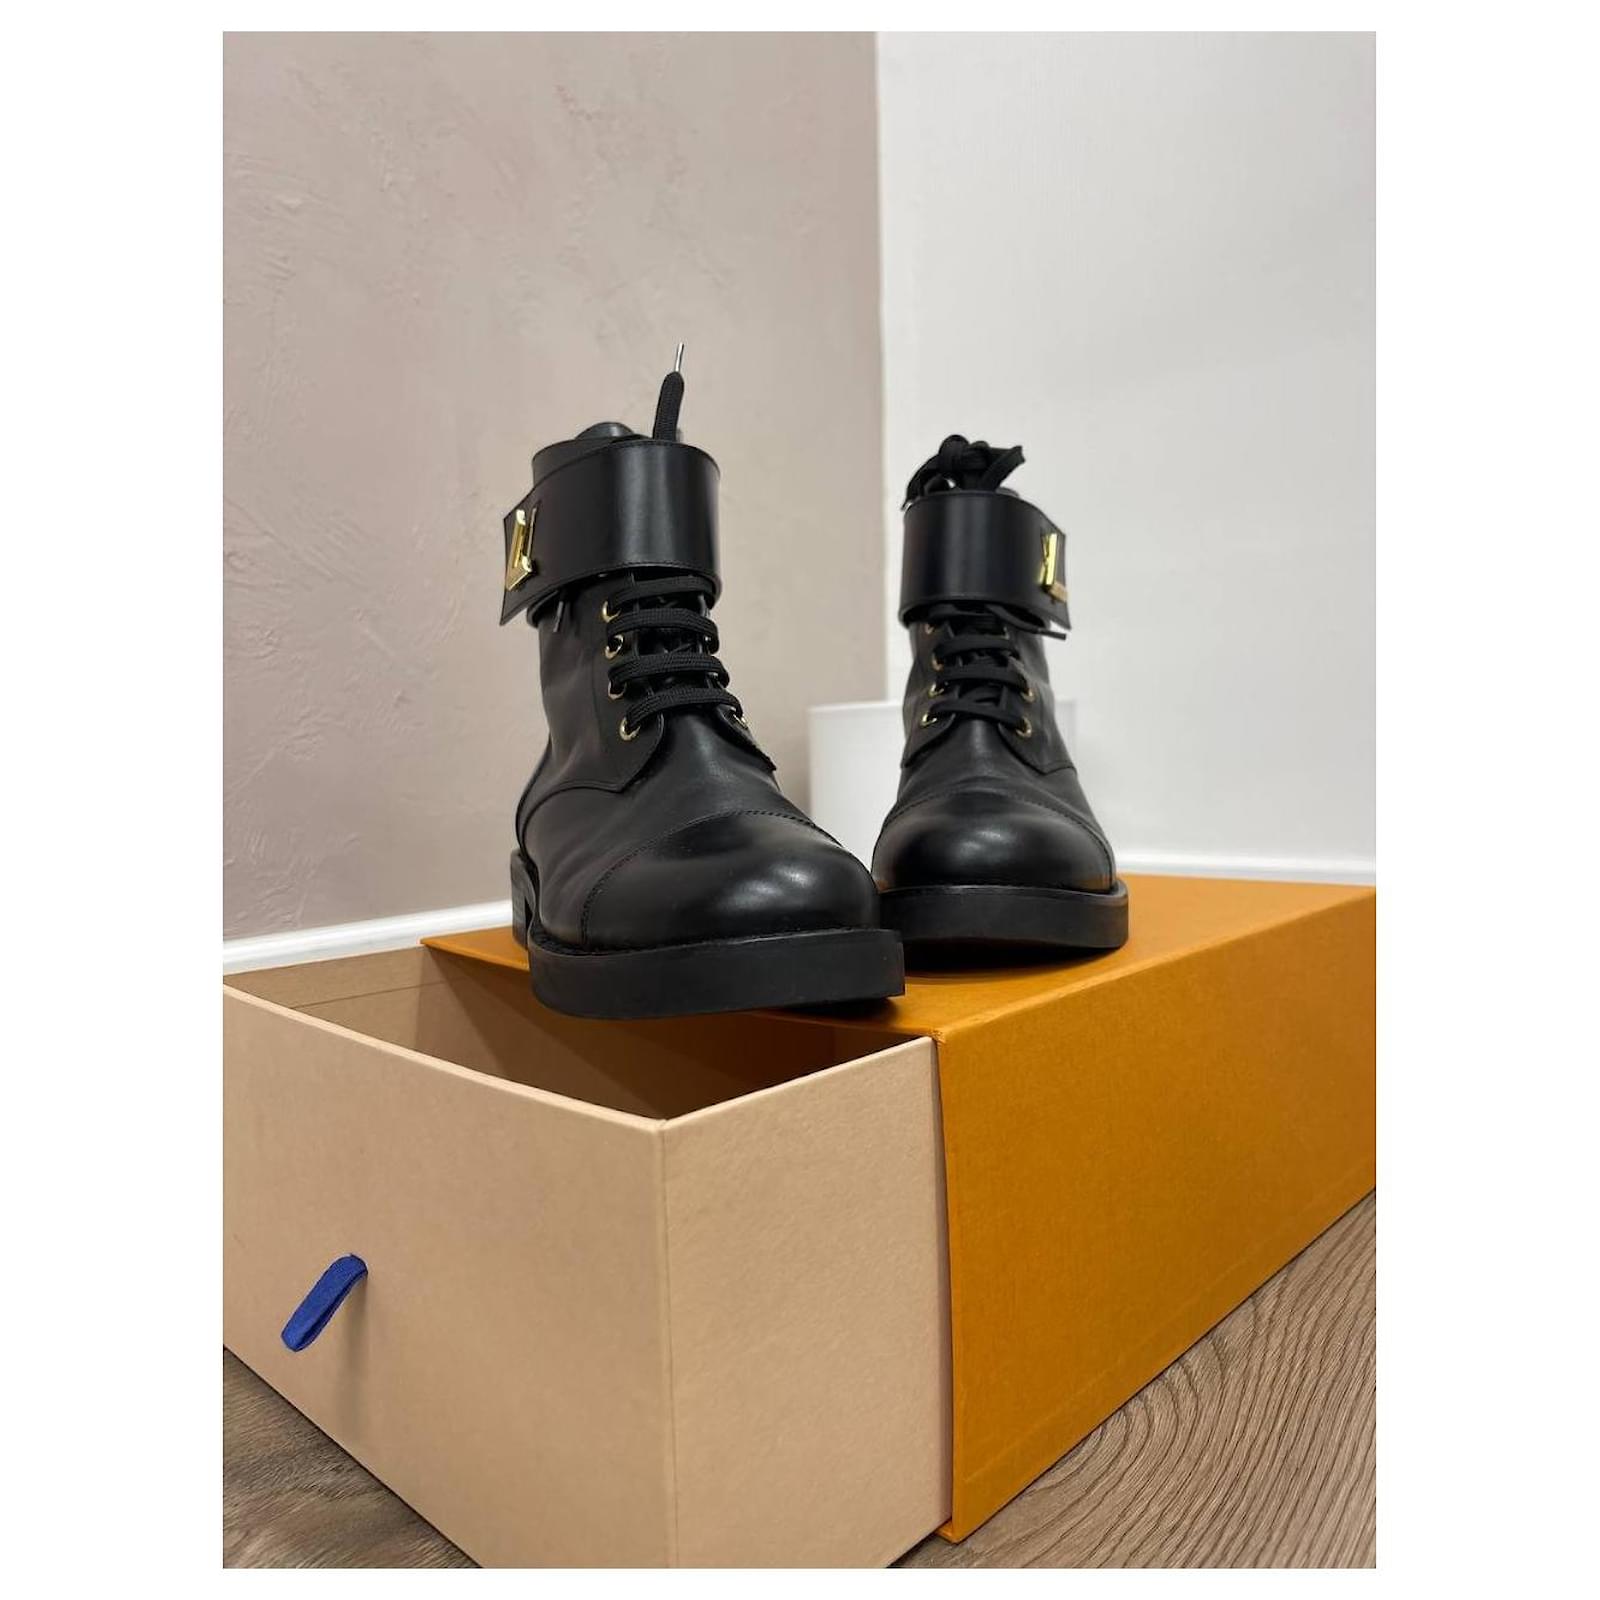 Louis Vuitton Monogram Canvas and Leather Wonderland Ranger Combat Boots  Size 38 Louis Vuitton